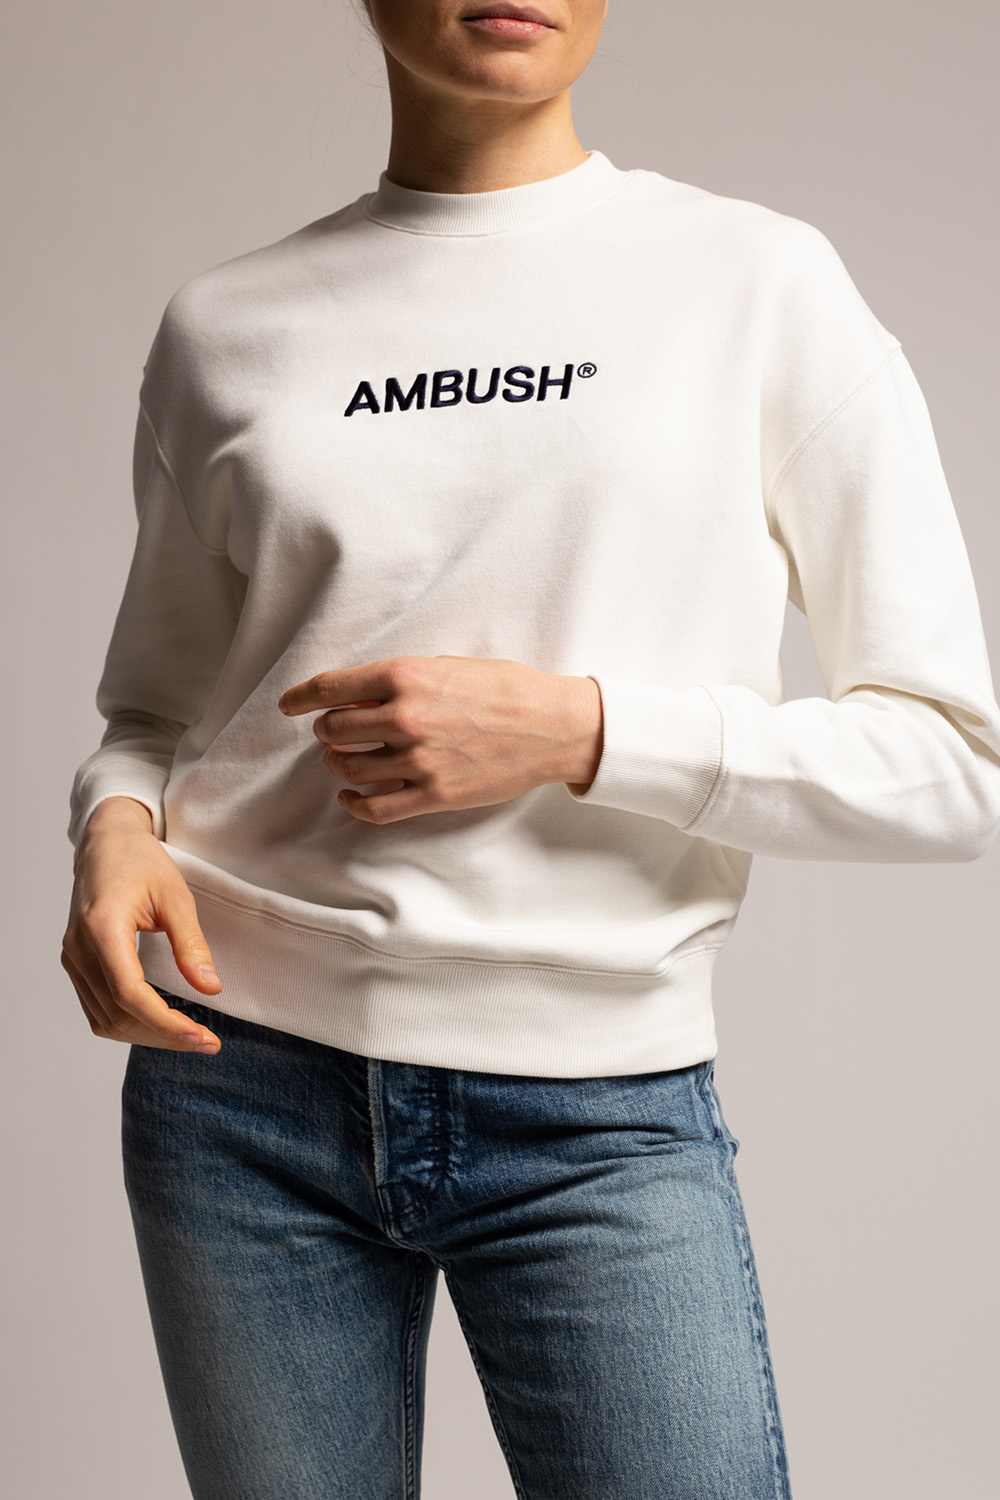 Ambush off white 1 t shirt